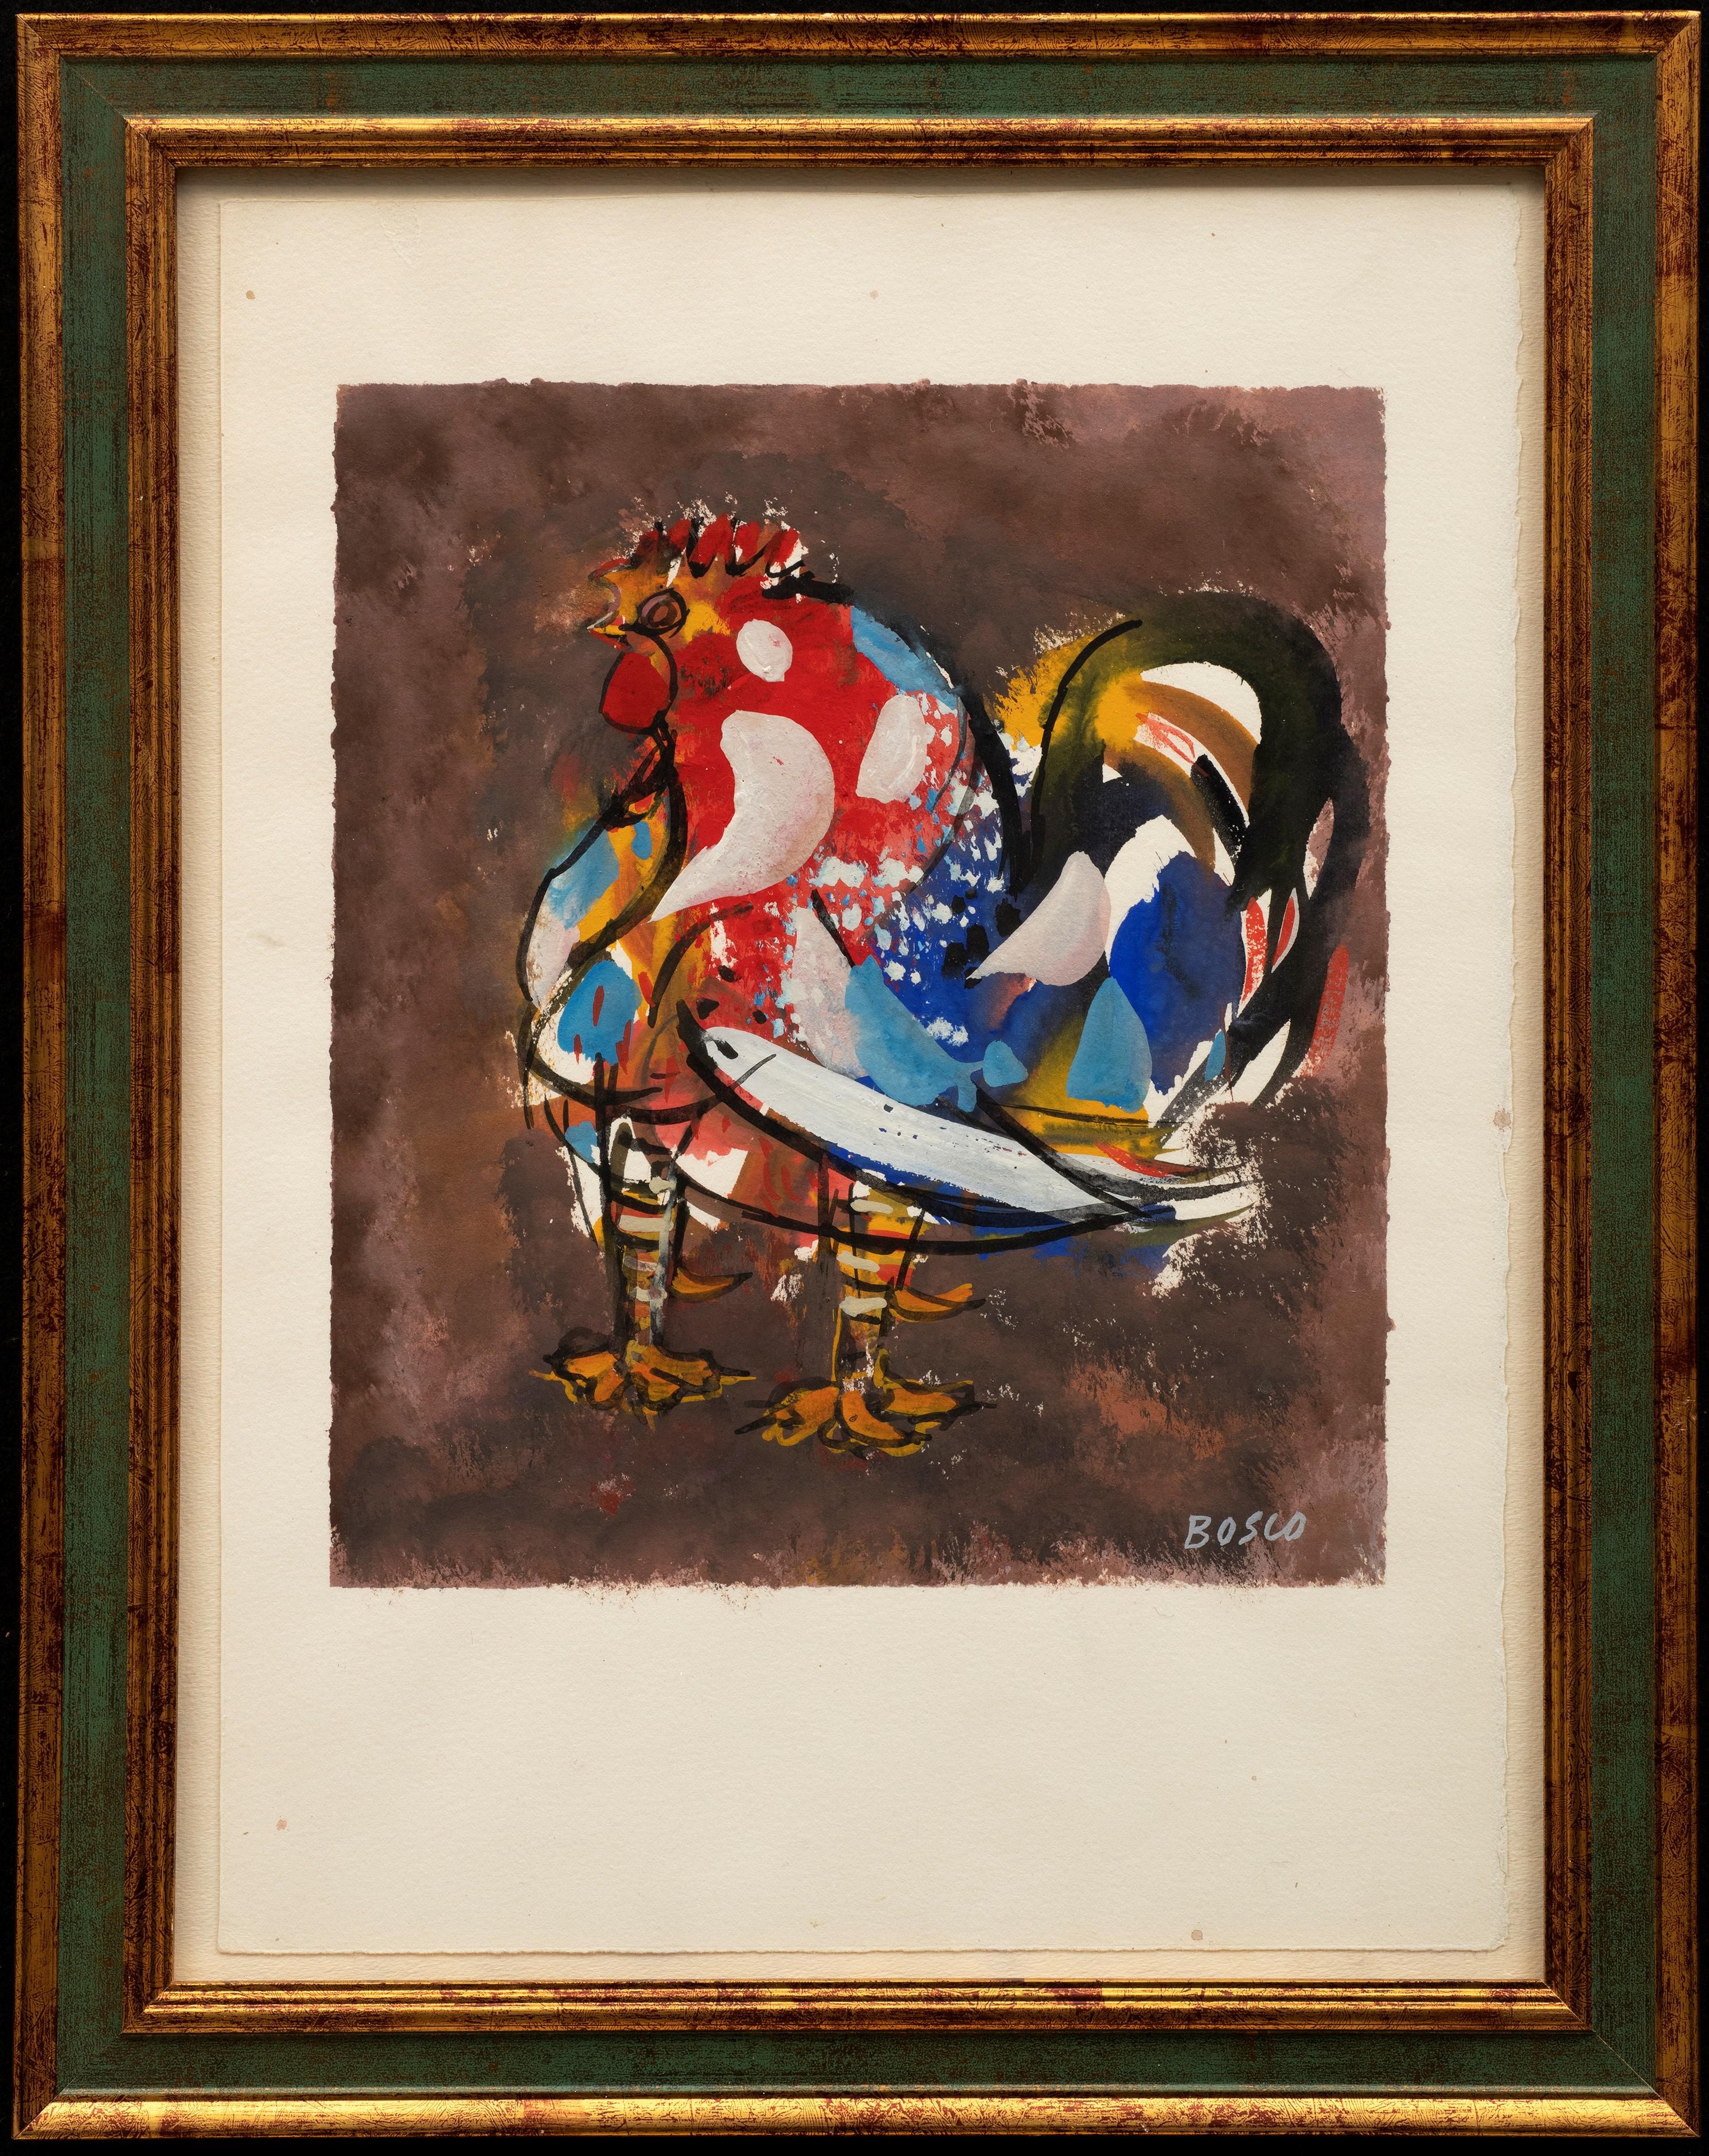 "Coq" 
Pierre Bosco, (1909-1993)
Gouache sur papier
10 x 9 (cadre 18 x 14) pouces

Pierre Bosco a montré un intérêt pour l'art dès son plus jeune âge. Son engagement et son dévouement à la peinture l'ont finalement conduit à Gênes, puis à Rome, où